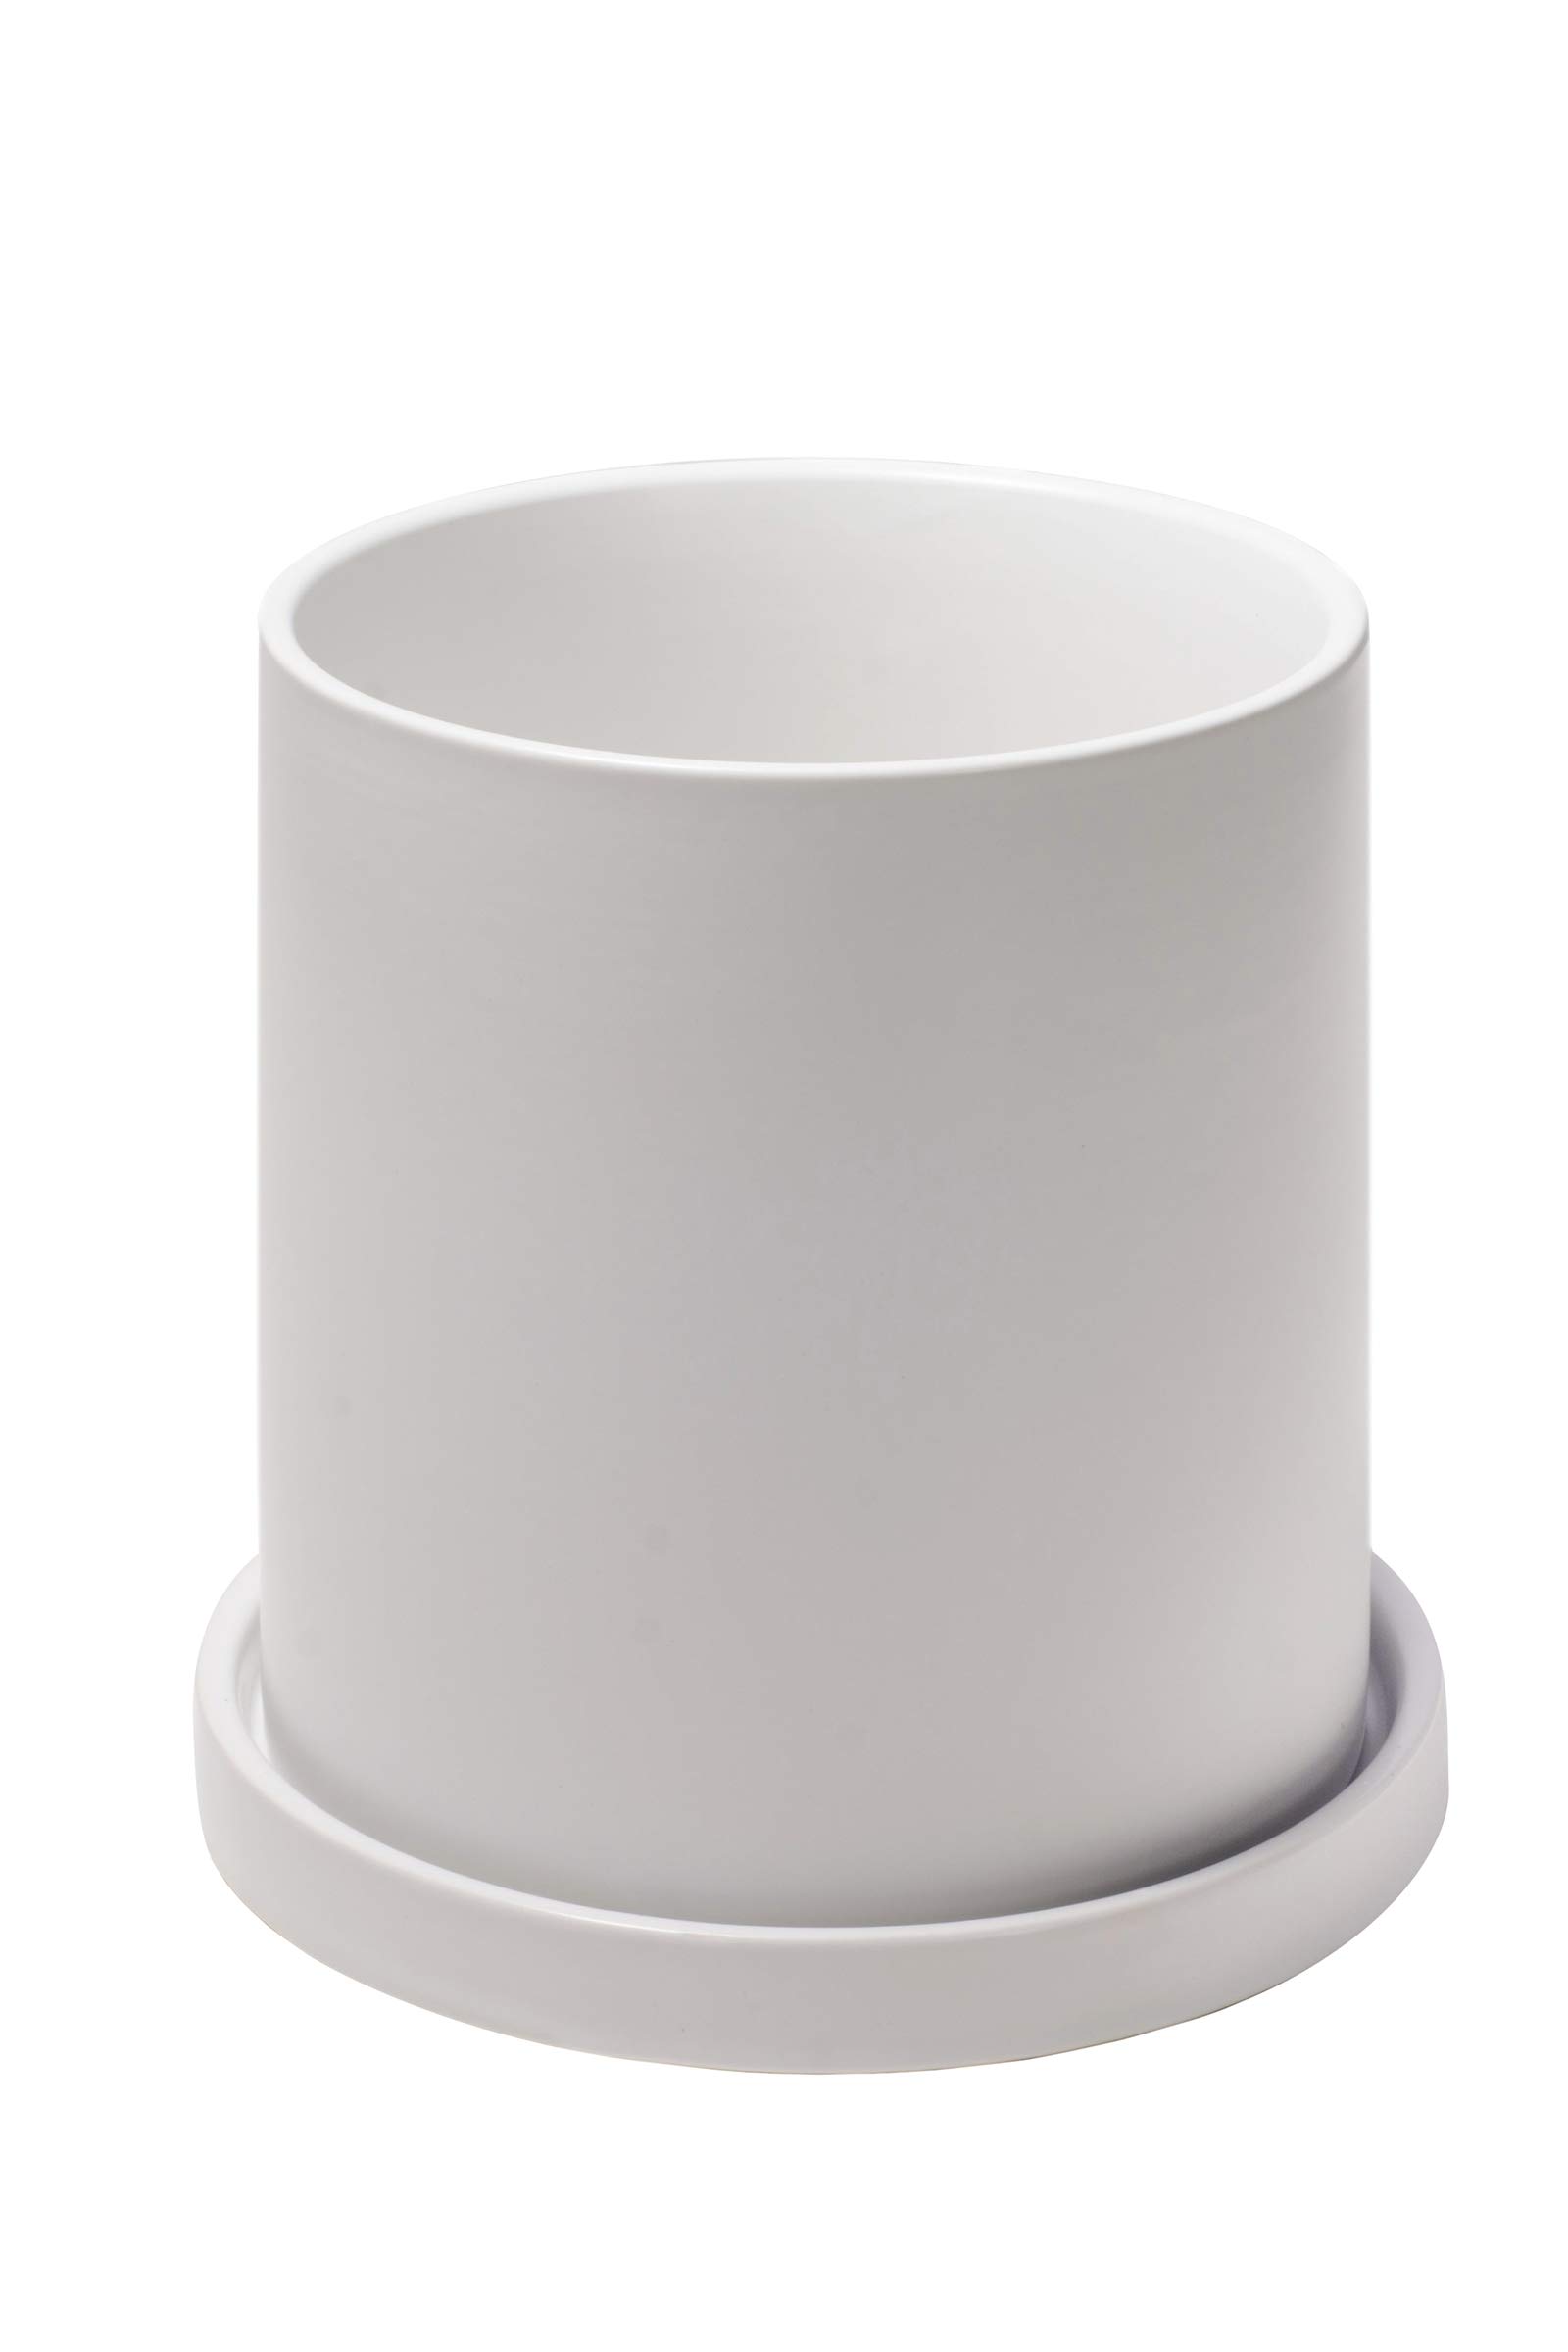 商品情報商品の説明主な仕様 【上質な材質】高品質の陶器で仕上げられで、高級感があります。陶器鉢材質が重いので、安定感があります。植物の美しさを引き立て、どんなインテリアの雰囲気に合わせやすい。br【サイズ】6号鉢幅：15.7cm 高さ：16.5cm 耐用性：この白植木鉢は現代の高温技術を採用されて、もっと丈夫で普通の鉢植えより長持ちします。br【植物の健康を保つ】底穴があり、排水に便利です。通気性がよく、根茎の呼吸が楽になり、植物の健康を保ちます。受け皿付きなので、置く場所はびしょ濡れになる心配が要りません。br【幅広い用途】おしゃれなデザインで、観葉植物、サボテン、多肉植物など植物の育成に適します。お部屋、オフィス、庭、お店、キッチンなどに置いて綺麗な飾りになります。記念日、誕生日、お祝い日の場合にご家族、お友達、自然や園芸が好き方への素敵なギフトです。br【カスタマーサービス】製品におきまして、何か品質問題がありましたら、いつでもお気兼ねなくお問い合わせください。無料返品、交換、返金対応致します。良いショッピング体験を提供させていただきます。